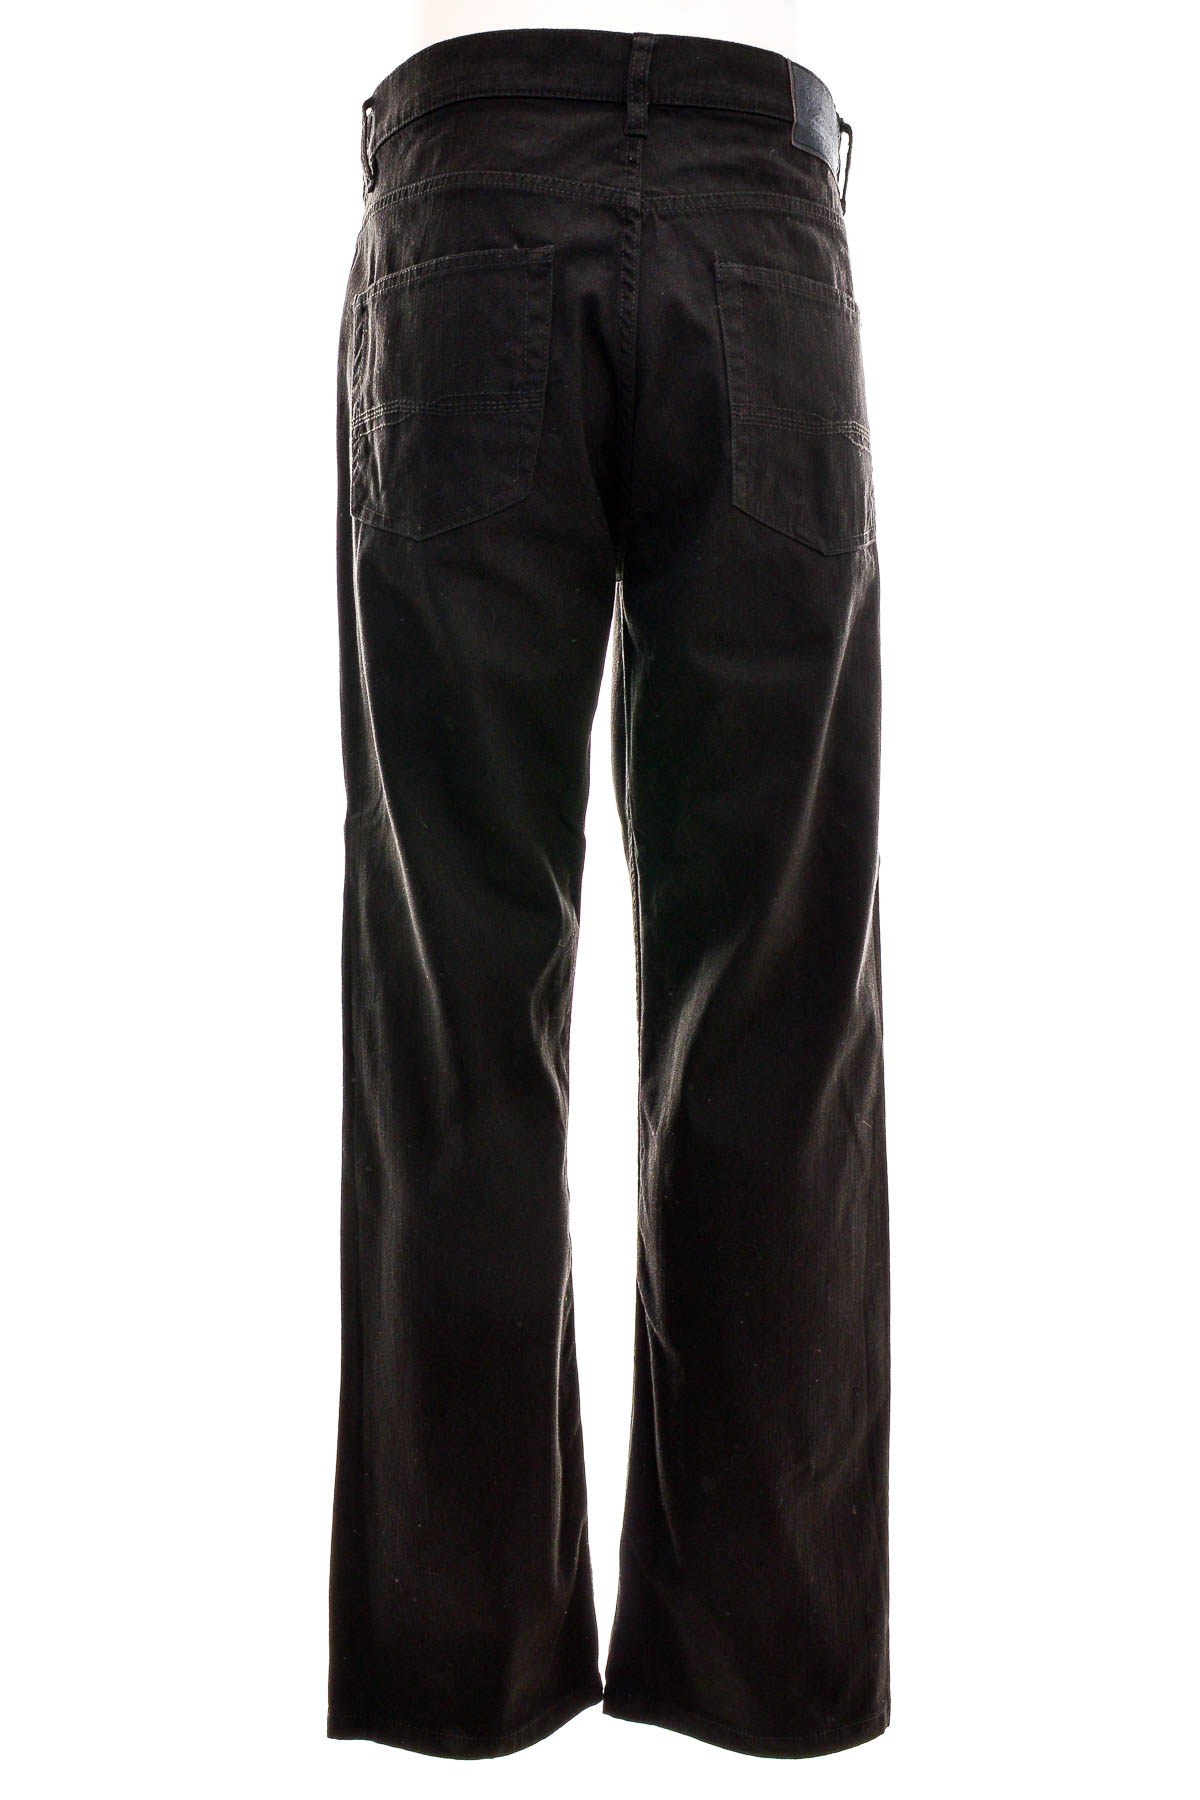 Men's trousers - Pioneer - 1